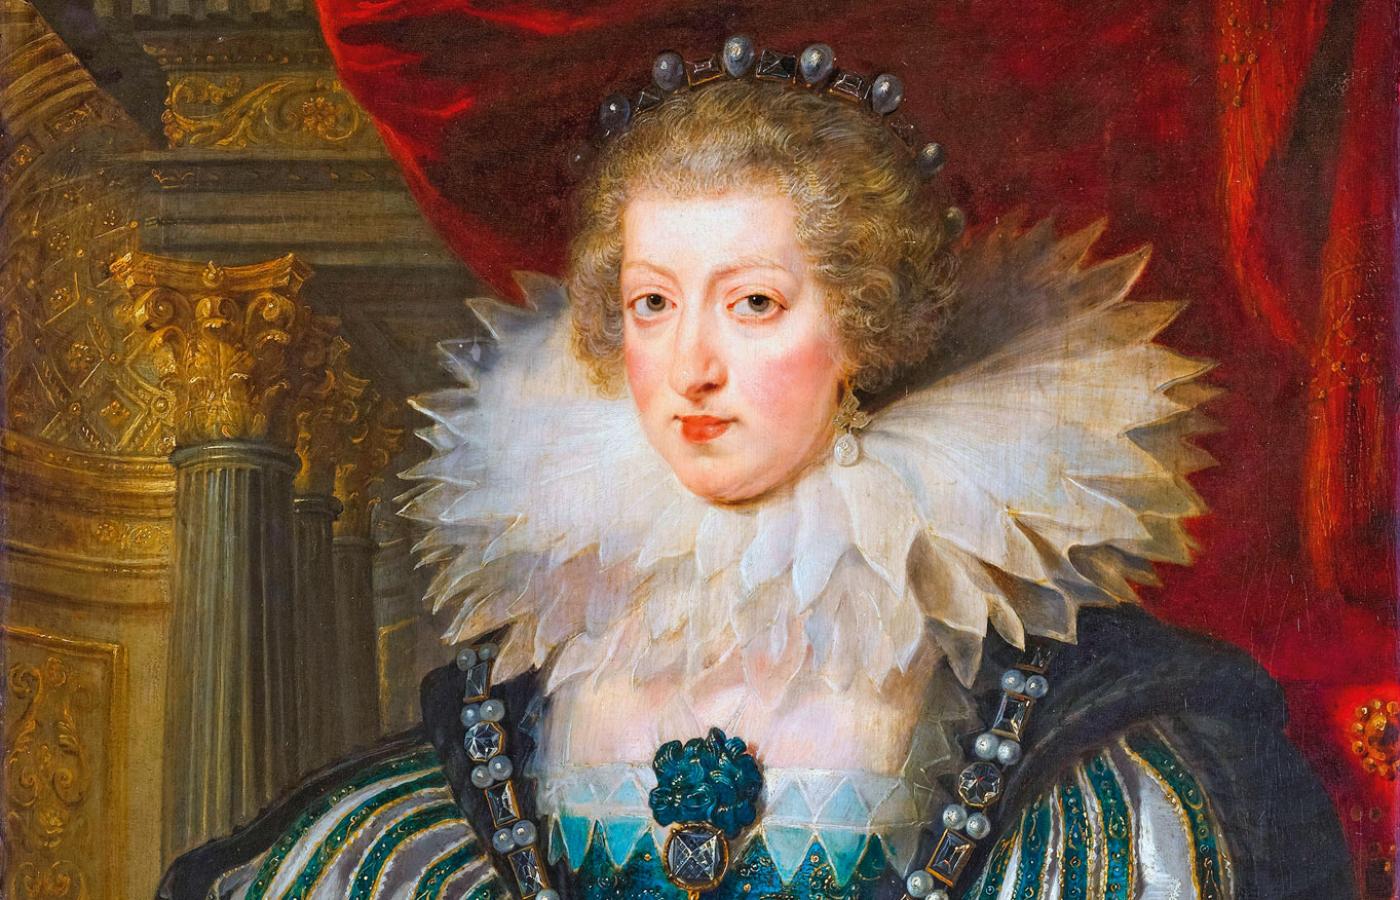 Anna Austriaczka na portrecie z warsztatu Petera Paula Rubensa, XVII w.